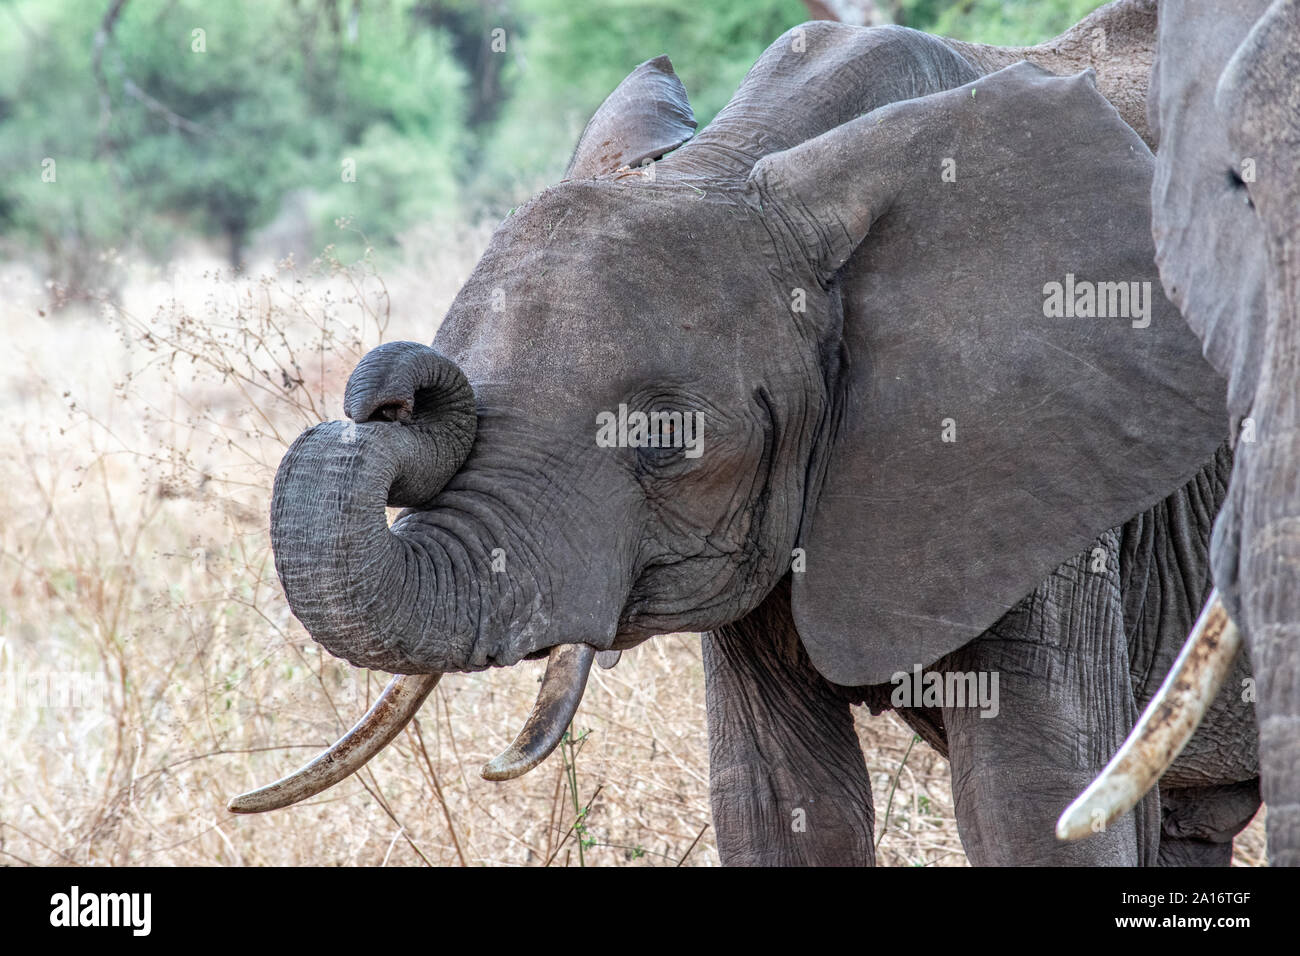 Baby Elefant mit Rüssel nach oben in S-Form gewellt. Stockfoto